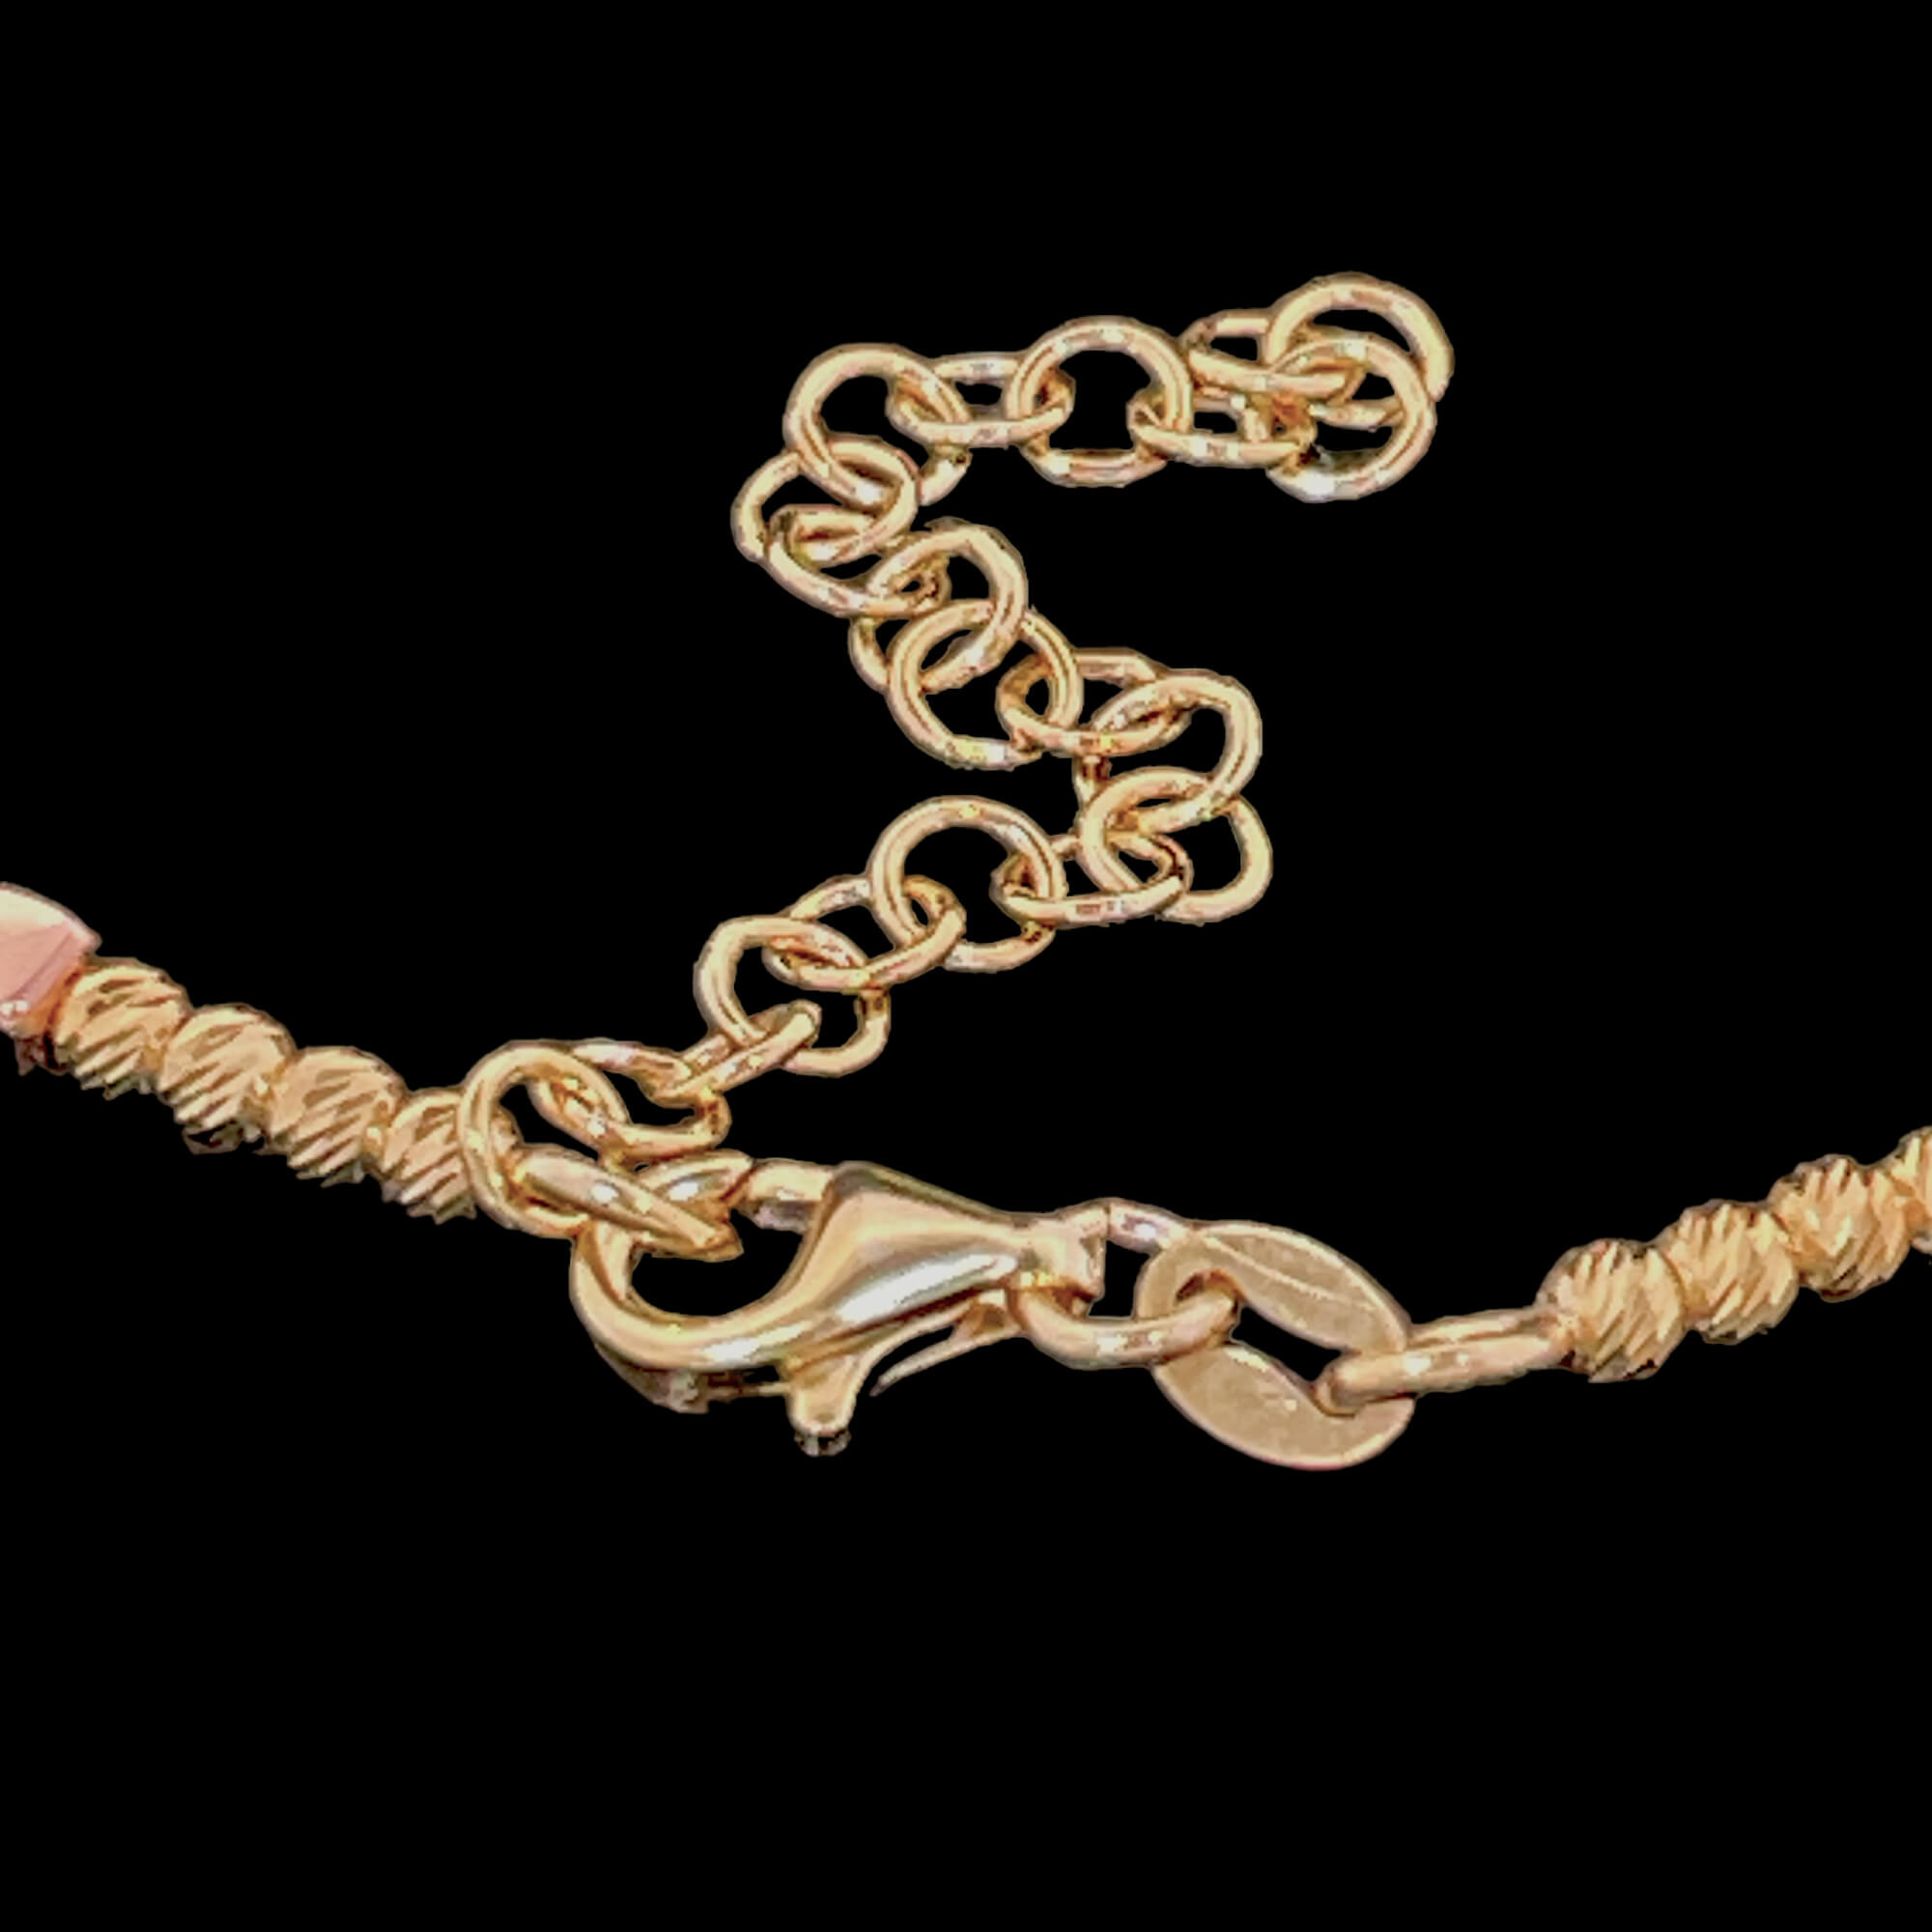 Dreifarbiges Armband, 3 mm Perlen mit Verzierung